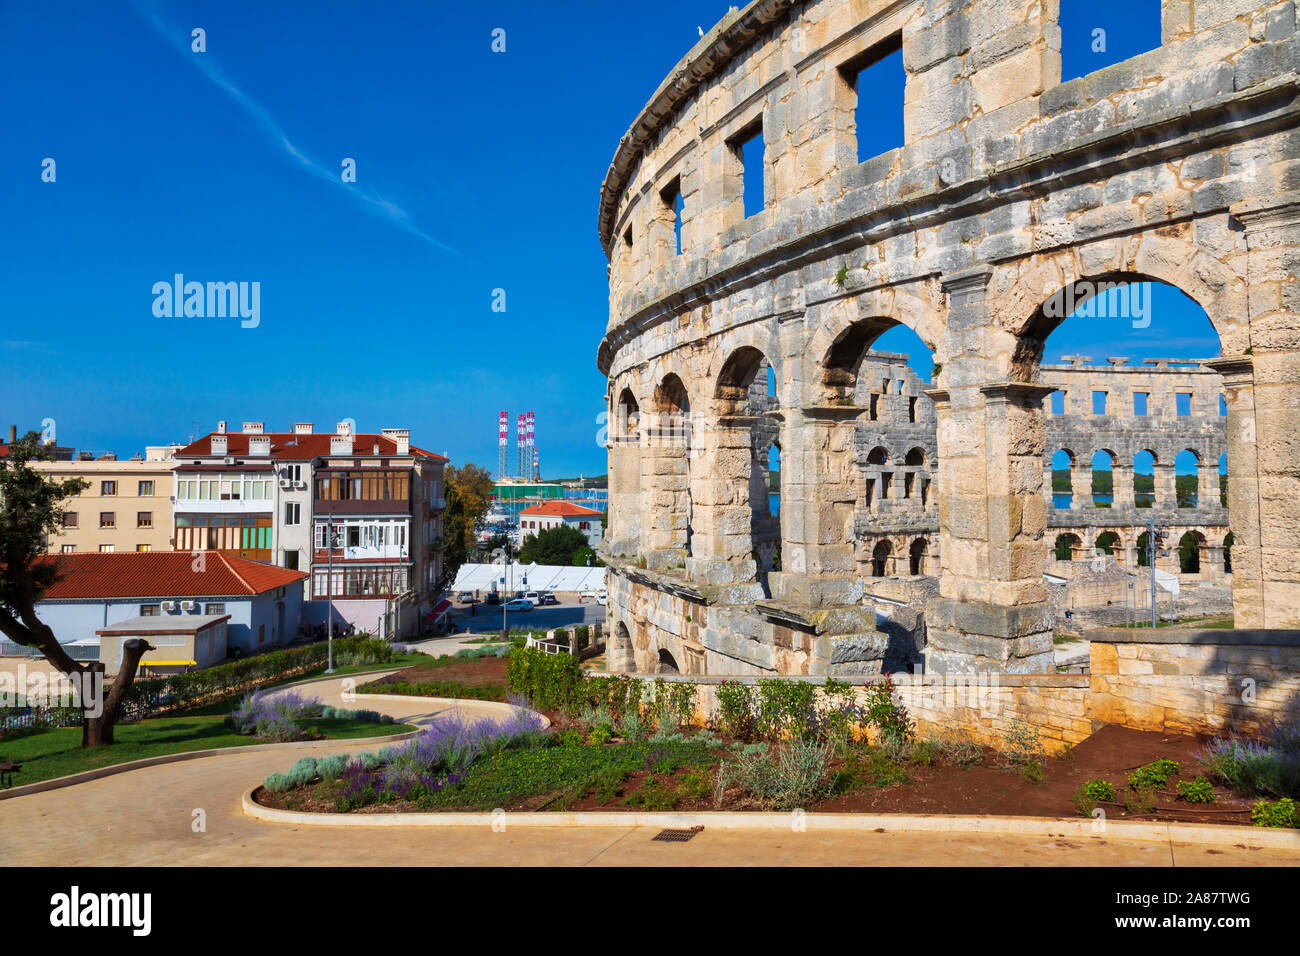 Arena di Pola, in Croazia. Rovine del meglio conservato anfiteatro romano. UNESCO - Sito Patrimonio dell'umanità. Immagine Foto Stock